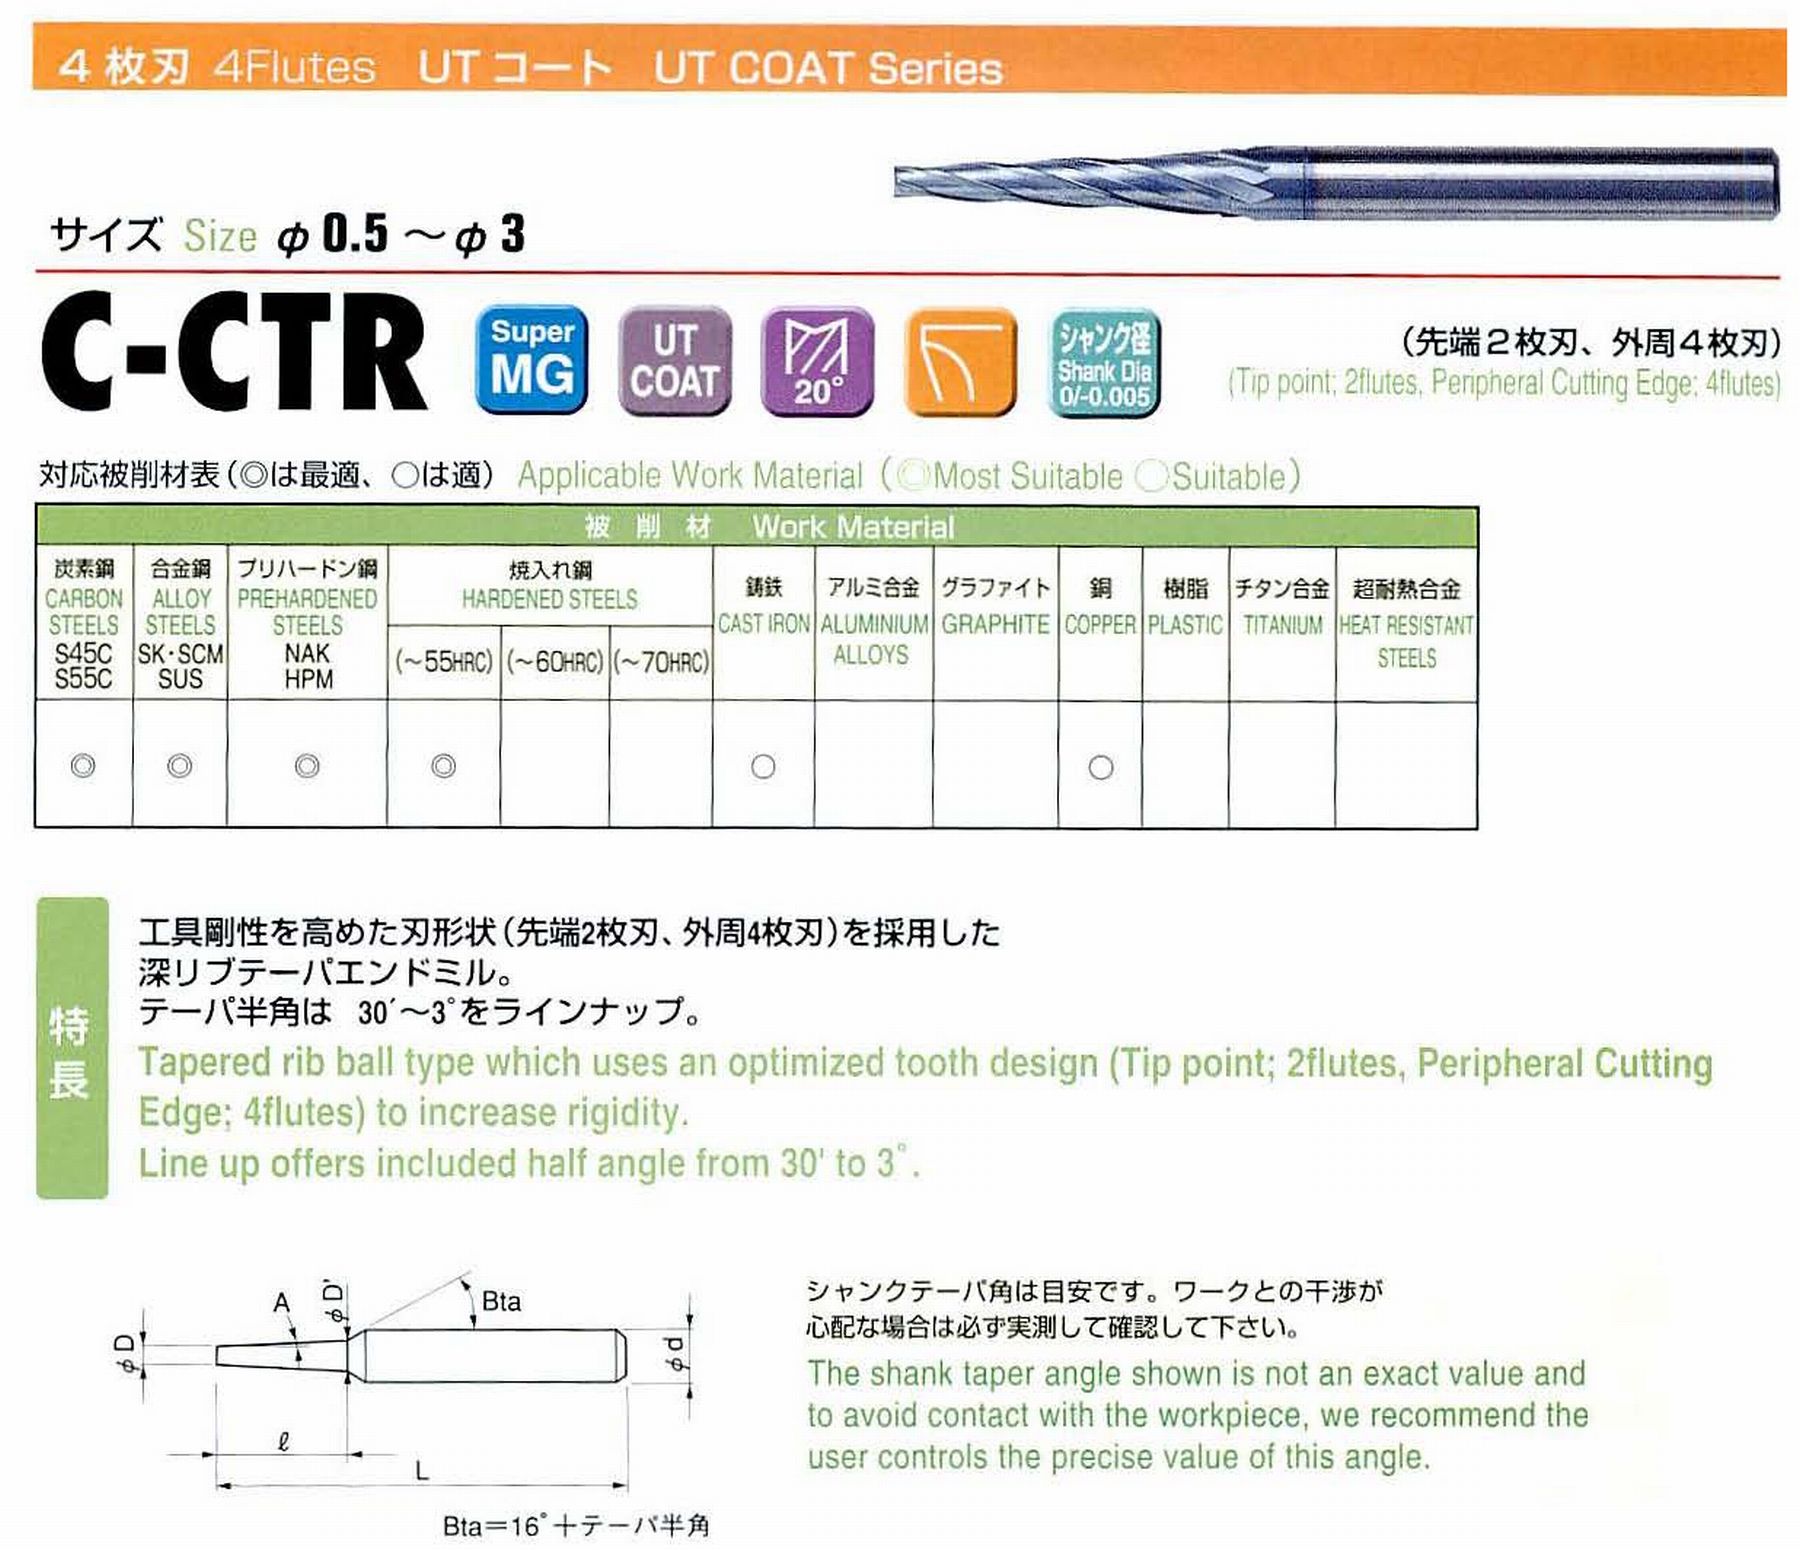 ユニオンツール 4枚刃 C-CTR4018-16-1.5 先端径1.8 テーパ半角45′ 刃長16 大端径2.22 全長55 シャンク径4